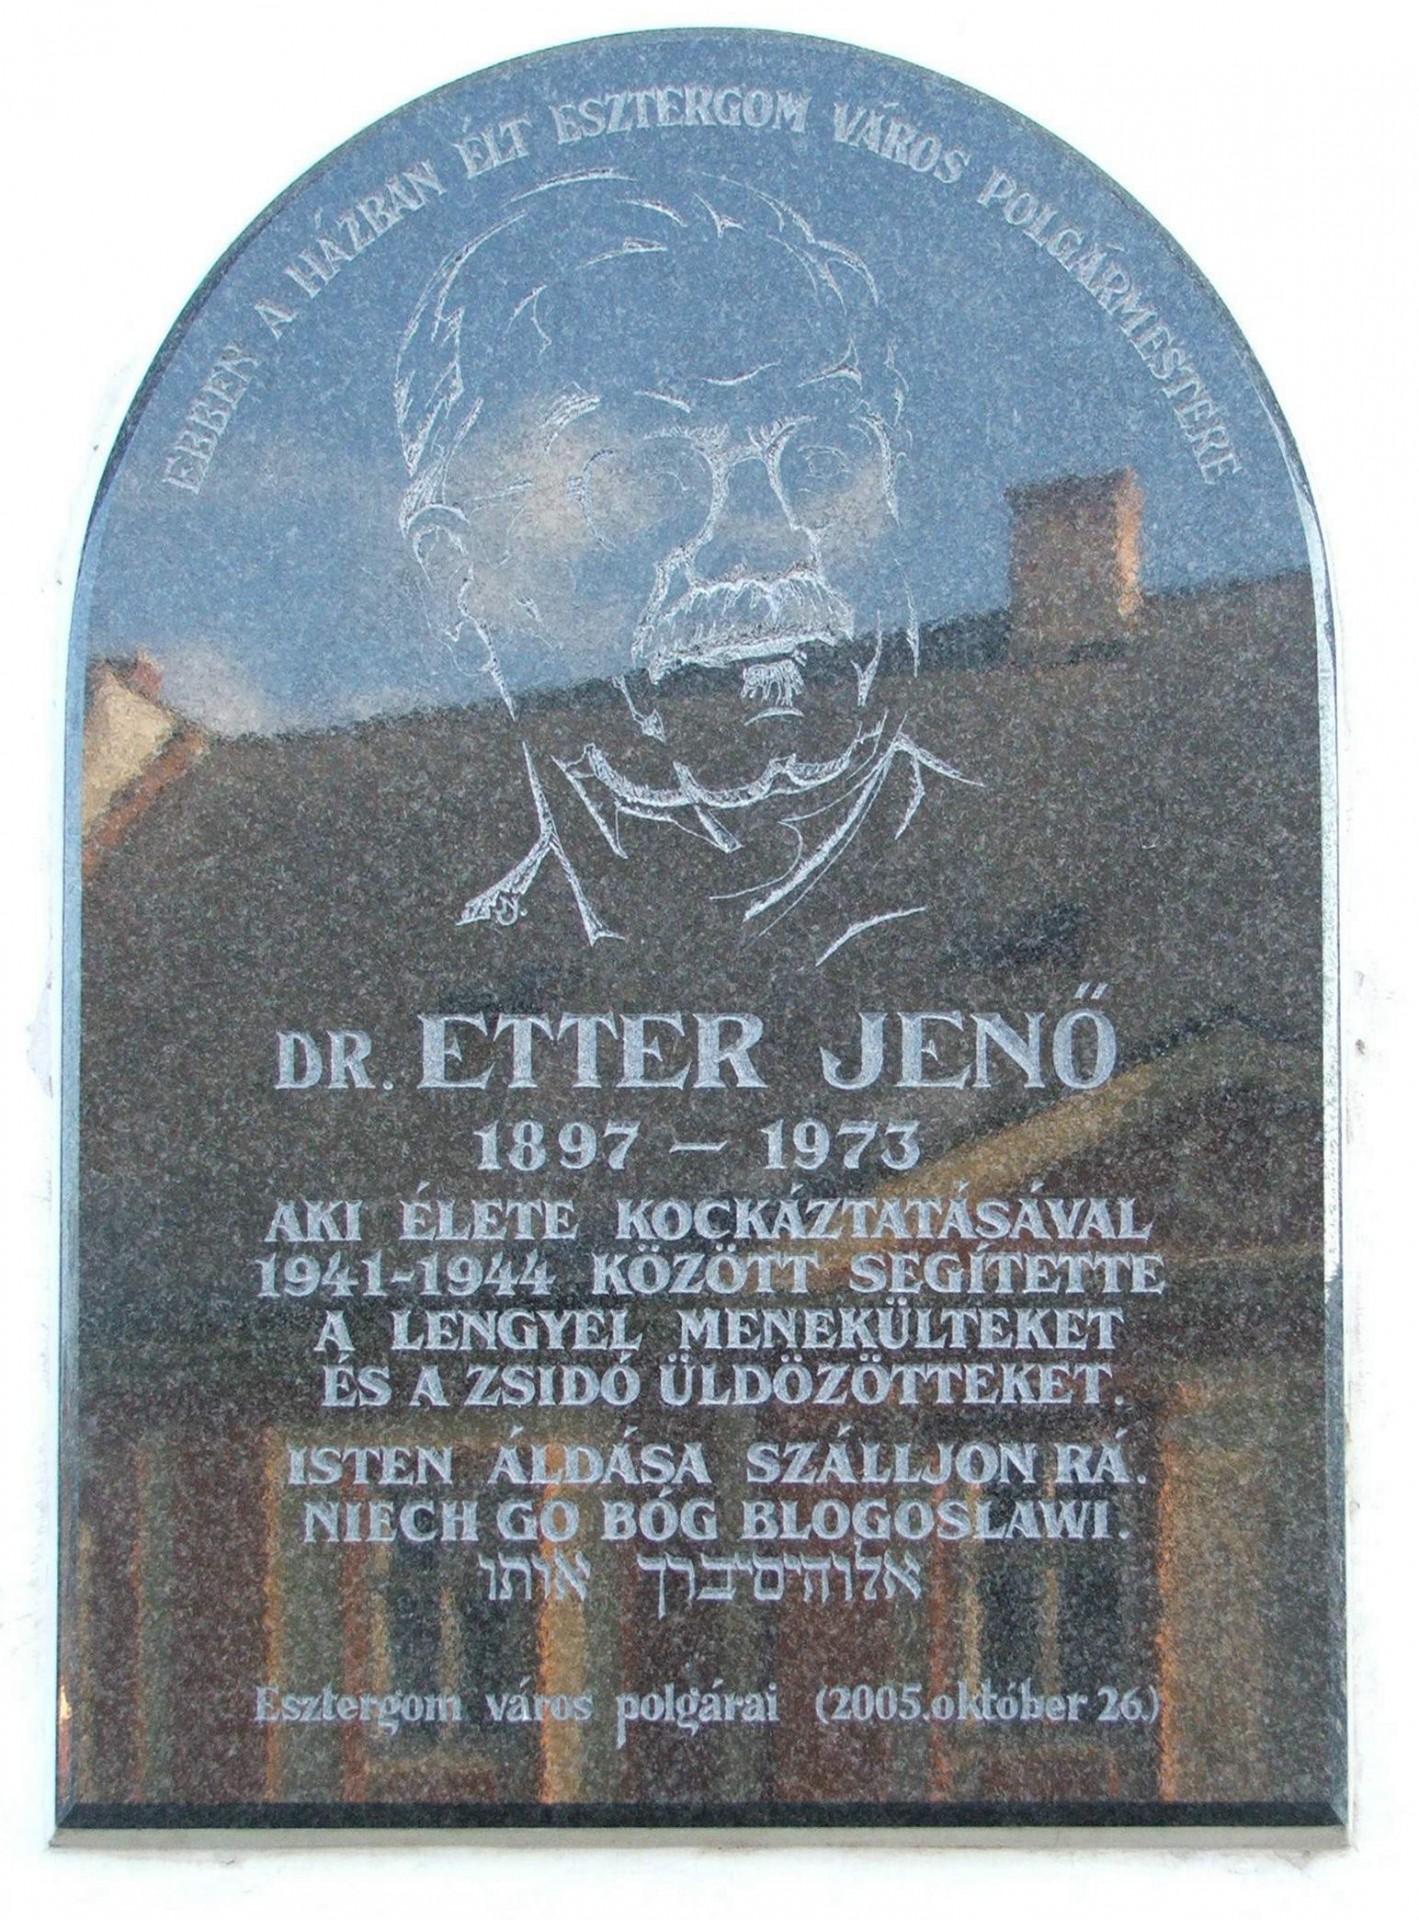 Plaque of Jenő Etter